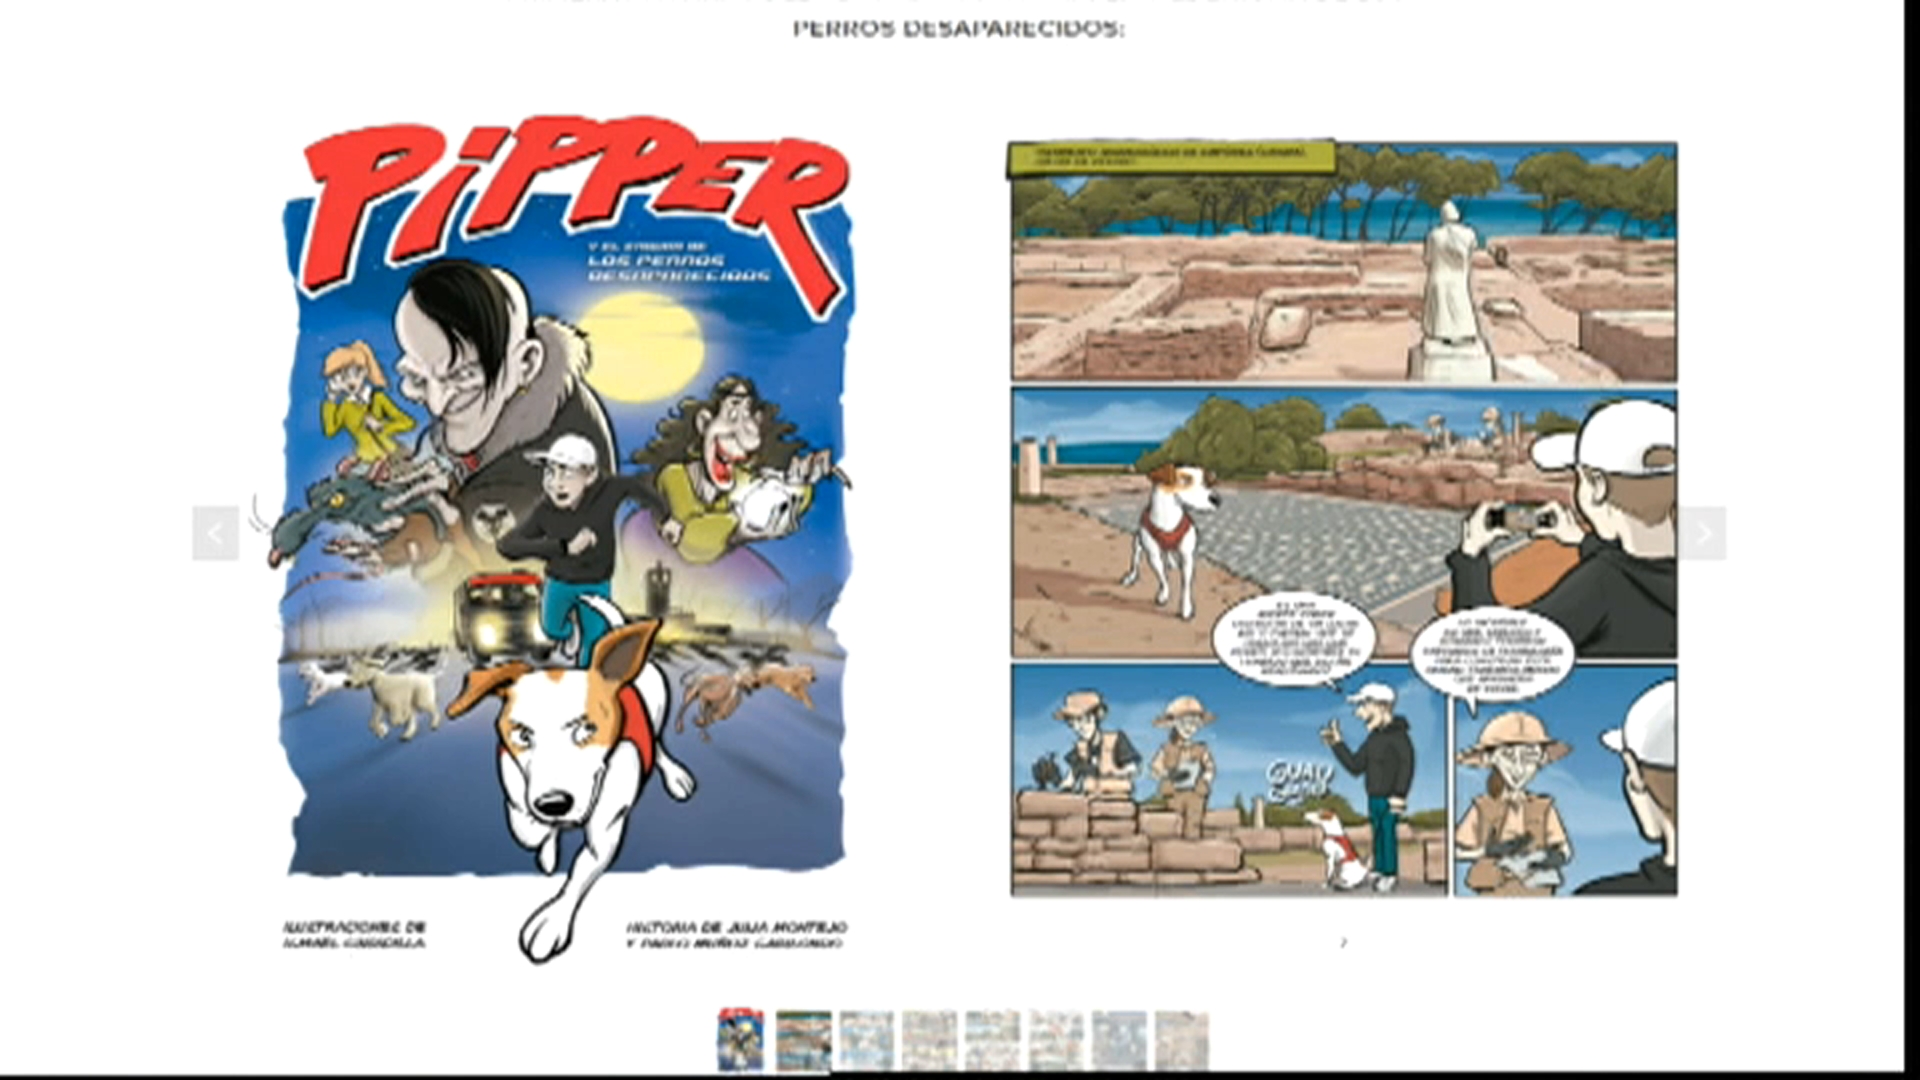 Pipper y sus aventuras